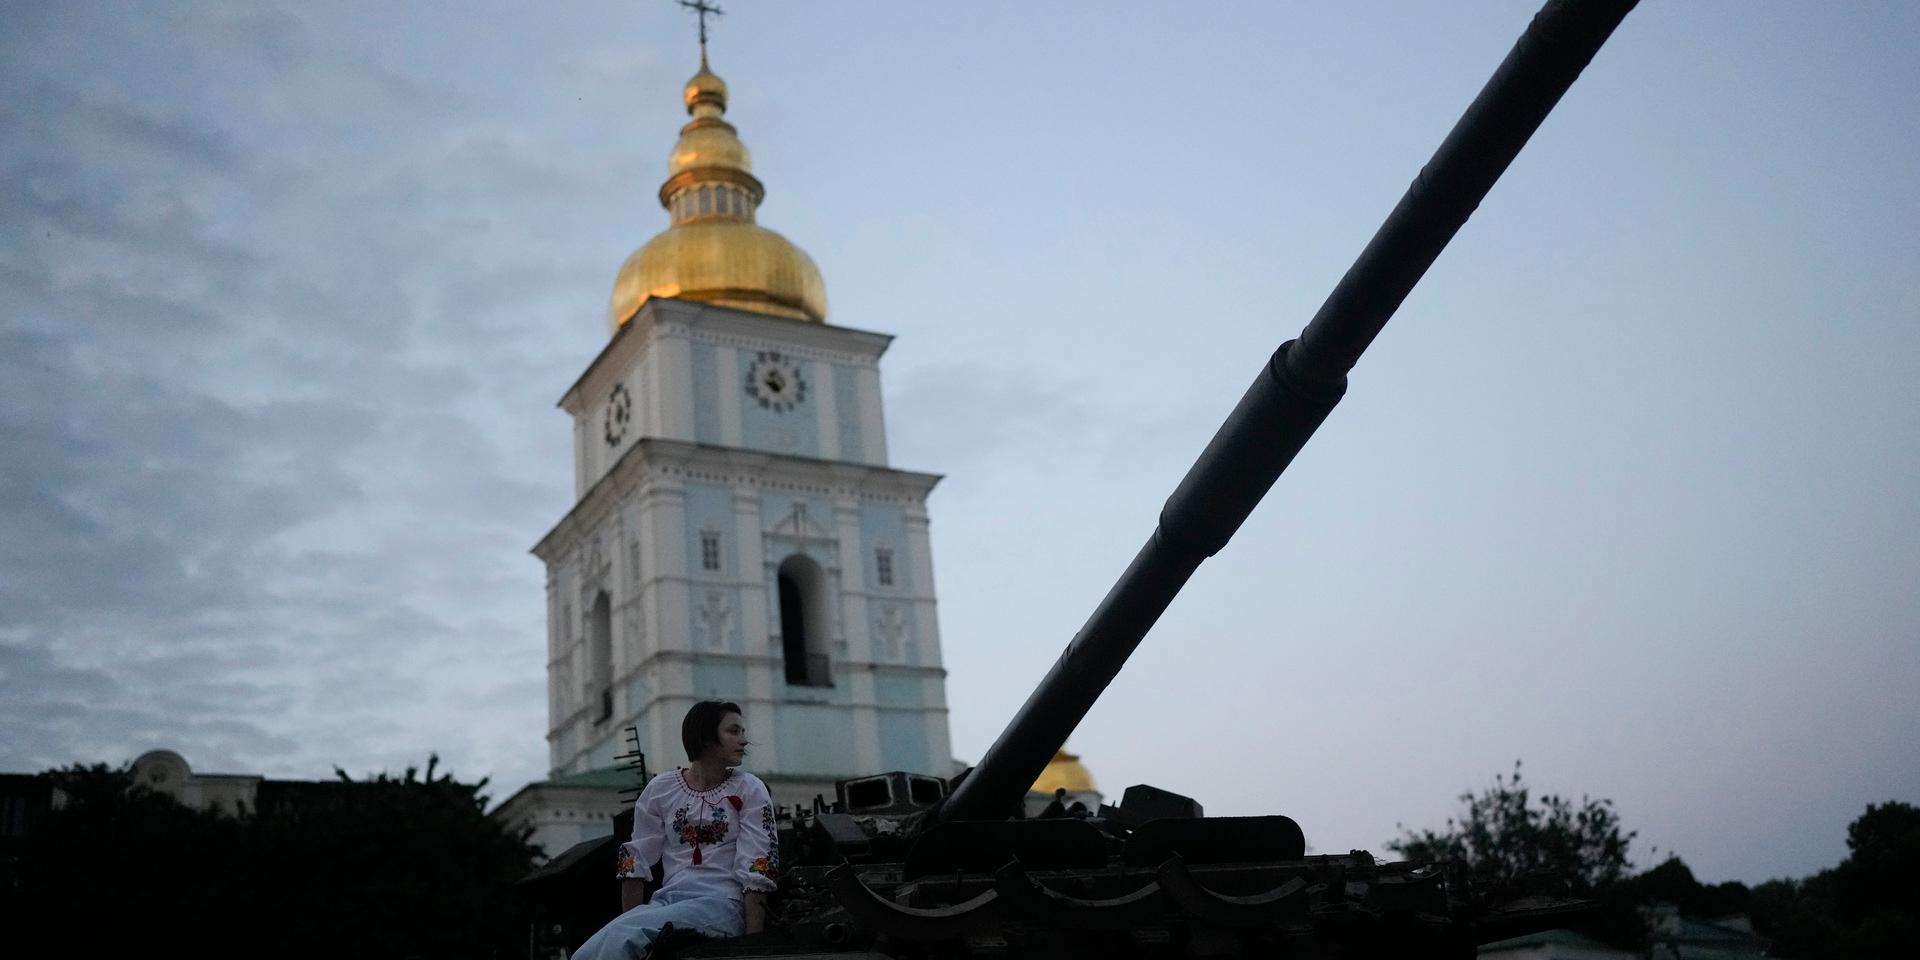 Hopp om seger. En kvinna sitter på en rysk stridsvagn i Kiev. Ukraina kan vinna kriget mot Ryssland, om landet ges rätt utrustning och stöd.